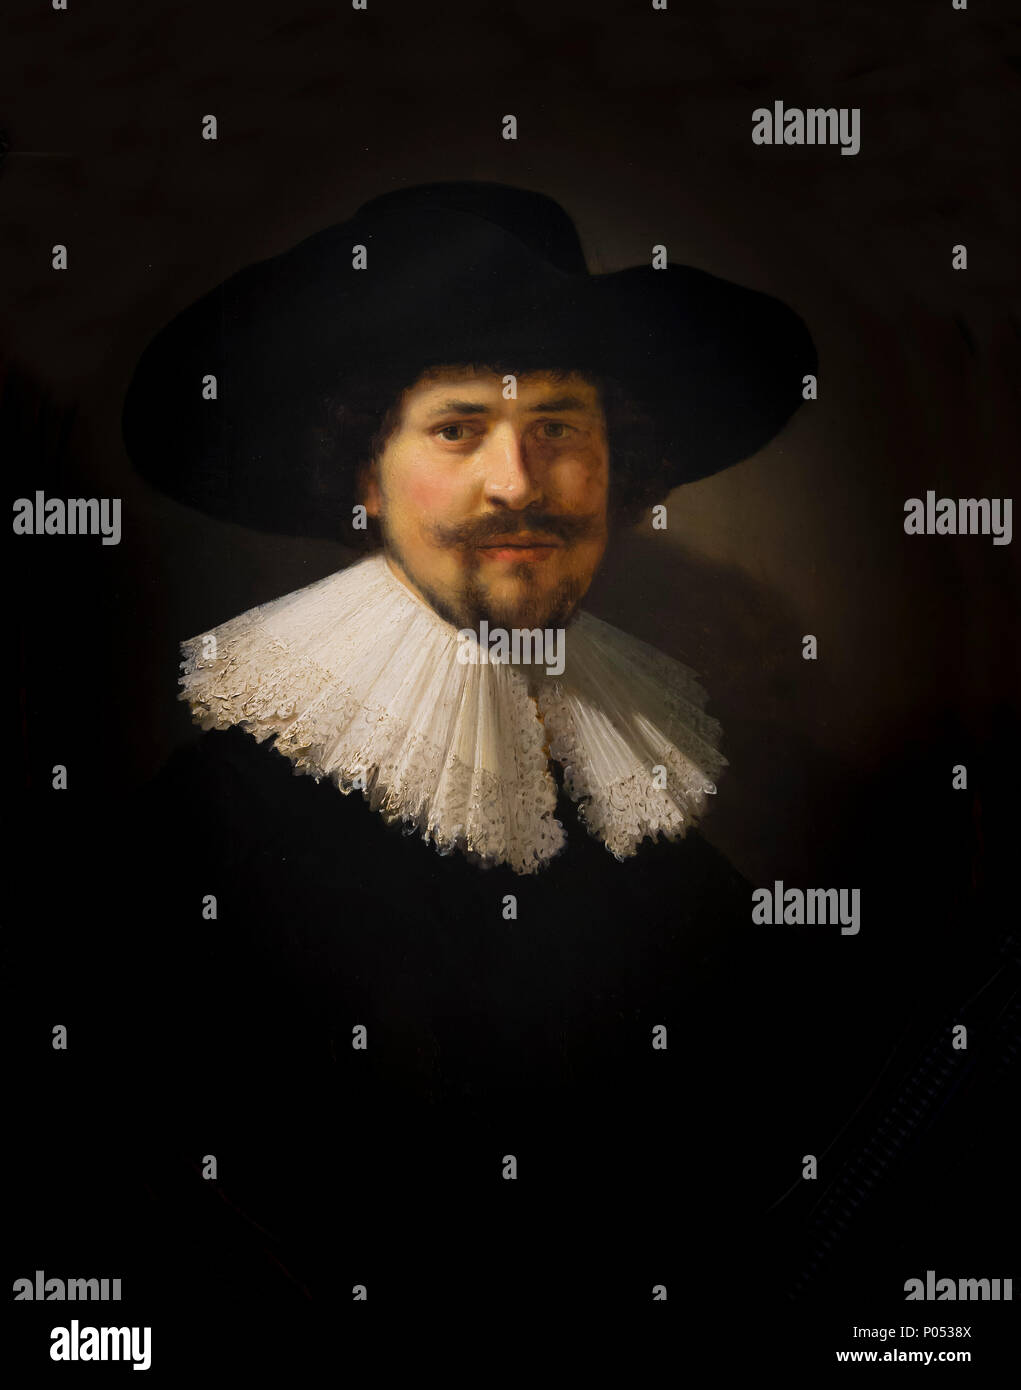 Retrato de un hombre que llevaba un sombrero negro, Rembrandt, 1634, Museum of Fine Arts, Boston, Mass, Estados Unidos, América del Norte Foto de stock